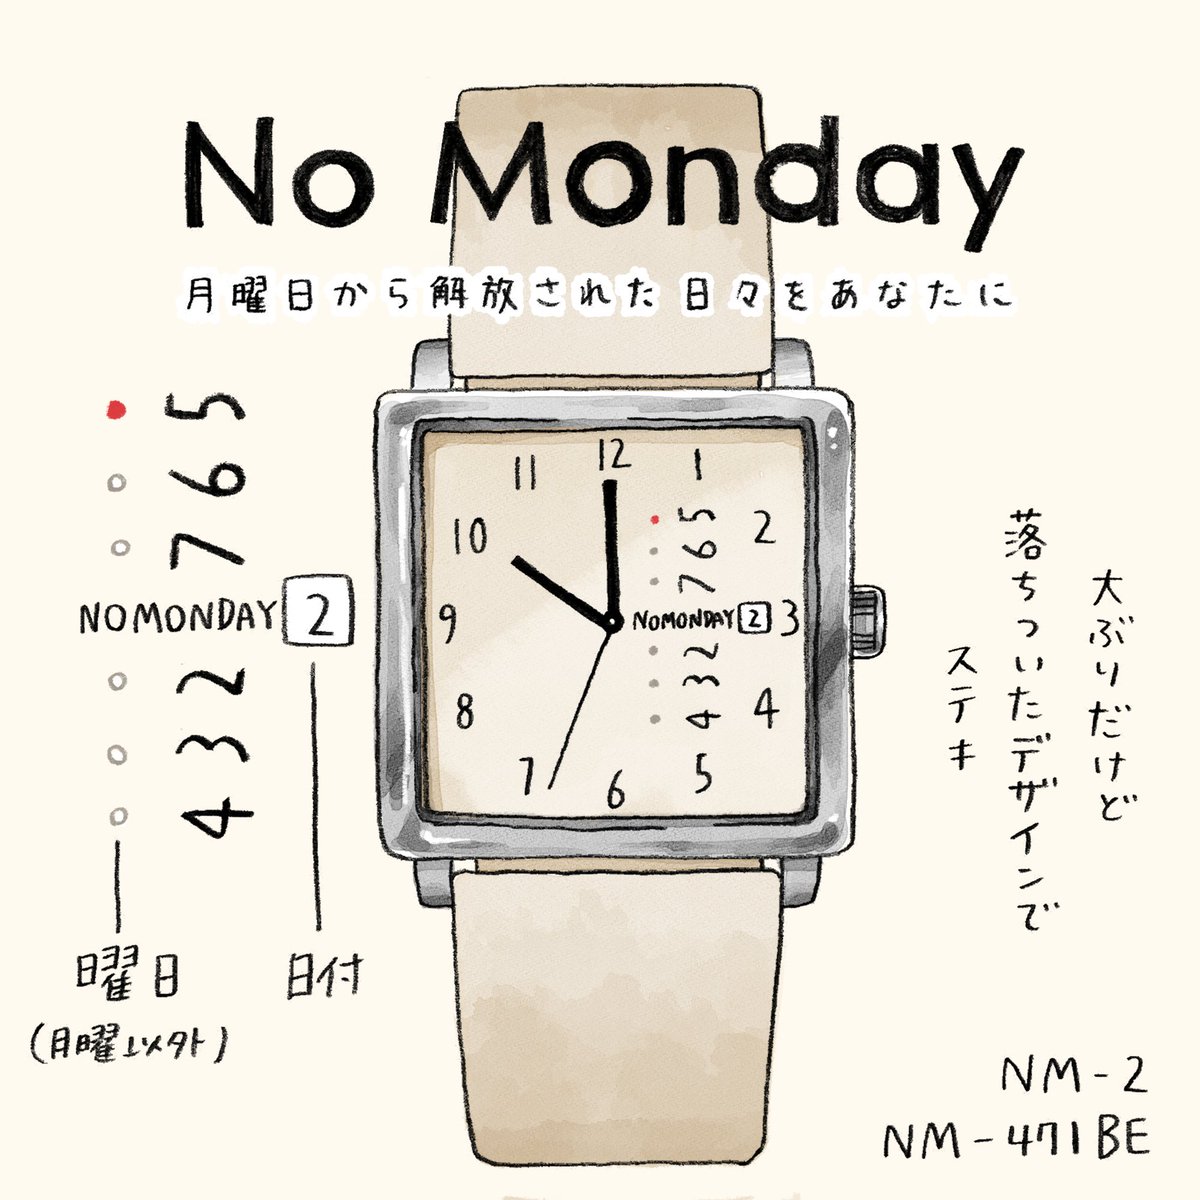 NO MONDAY様(@Nomonday_jp)より素敵な時計をいただきました!
シンプルながらも個性的なデザインで気に入っています⌚️✨

クーポンコード『ruuiruiruirui』で10%オフになります?
ショップ: https://t.co/aGiKsbiGFk
#nomonday #腕時計 #PR 